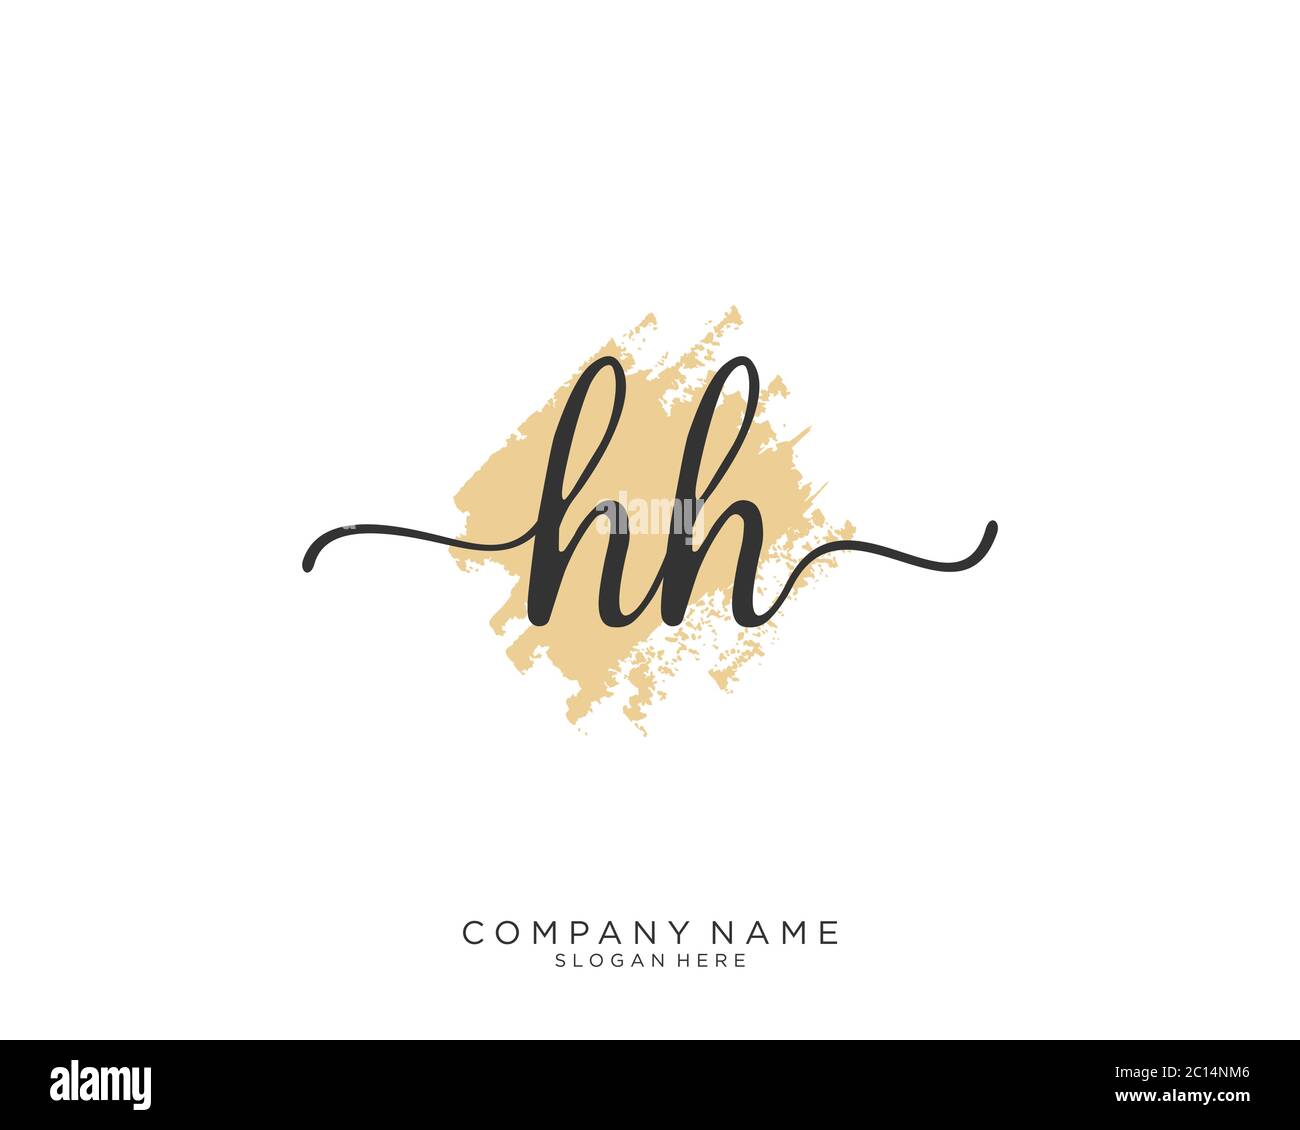 HH-Initial Handschrift Logo Vektor Stock Vektor